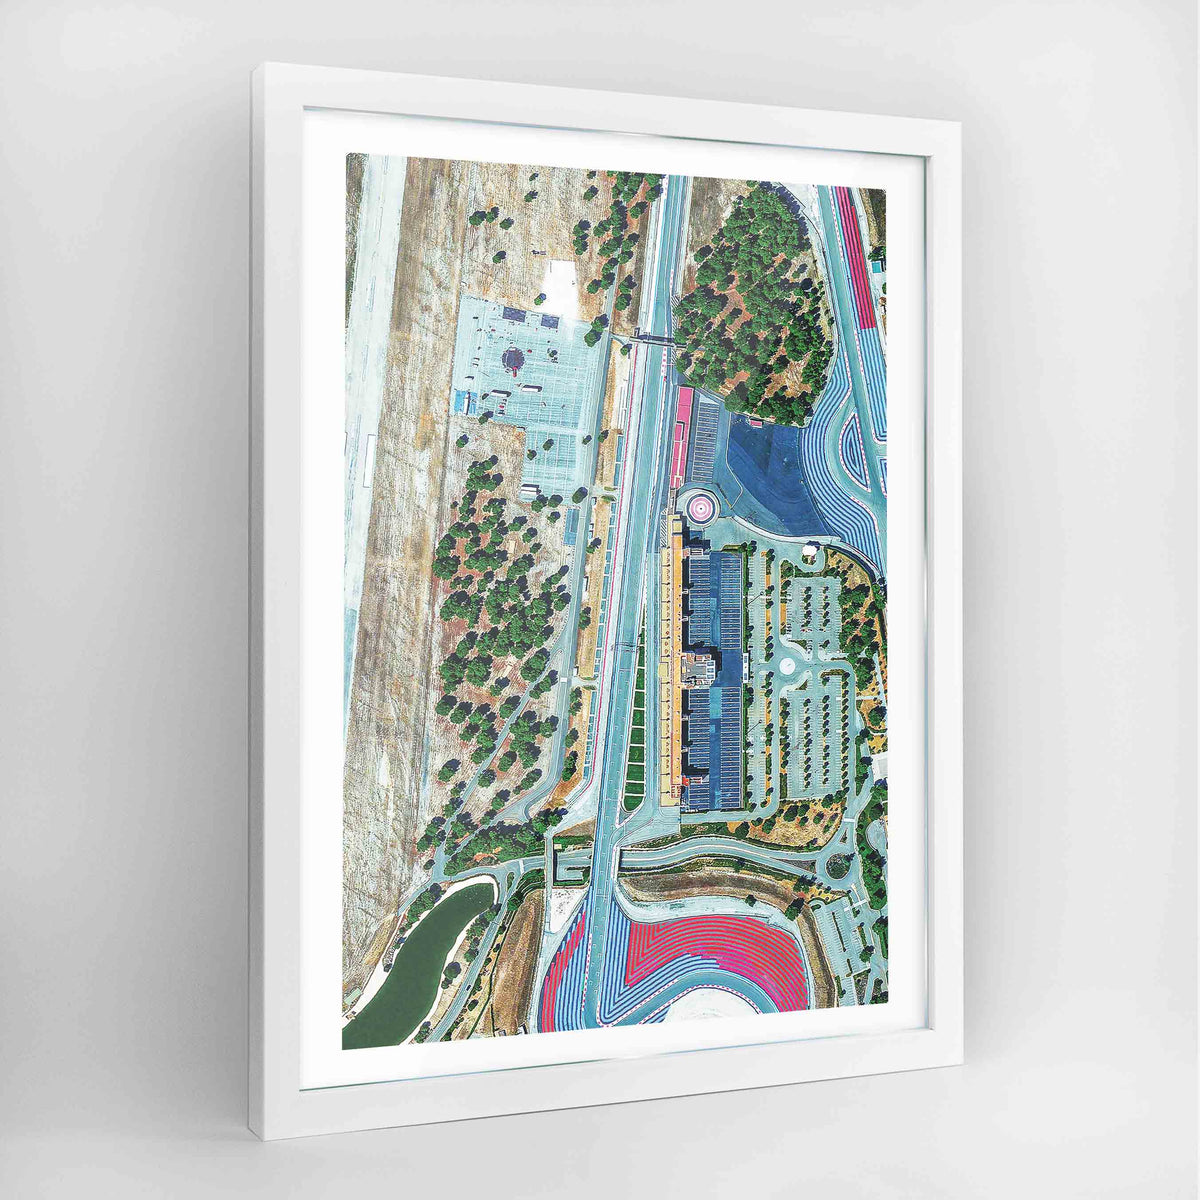 Circuit Paul Ricard Earth Photography Art Print - Framed